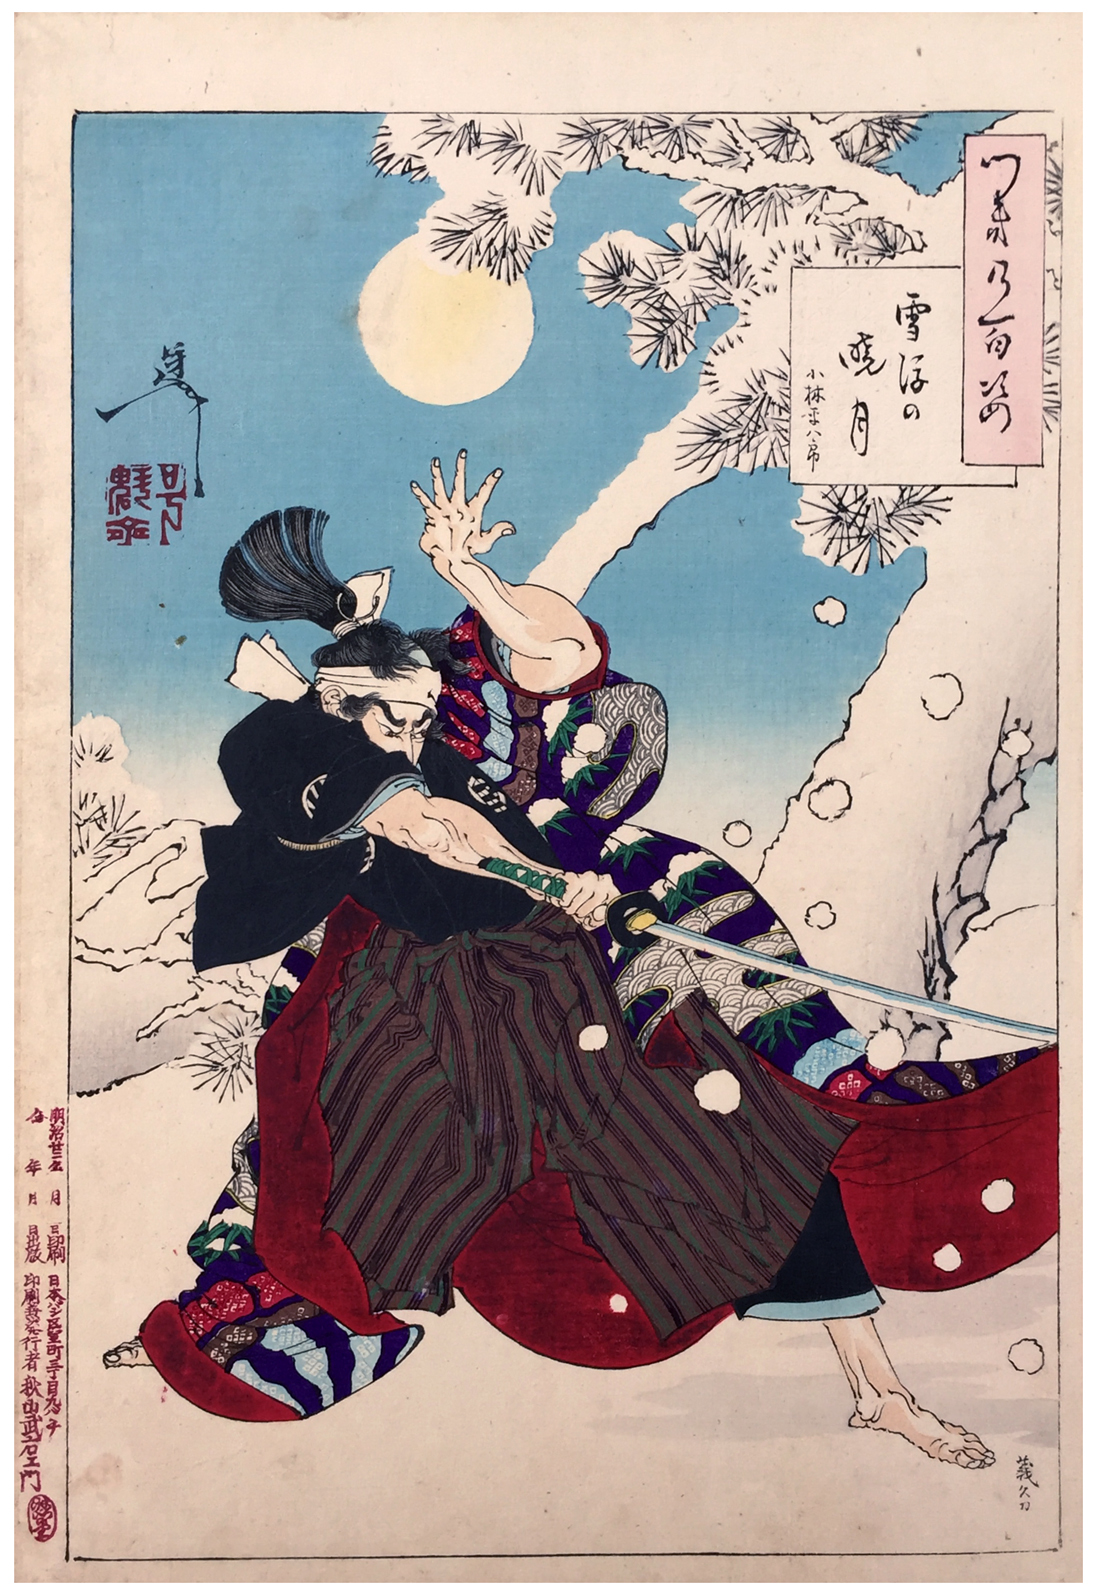 Seppu no Gyogetsu (Dawn Moon and Tumbling Snow) by Tsukioka Yoshitoshi - 1889 private collection